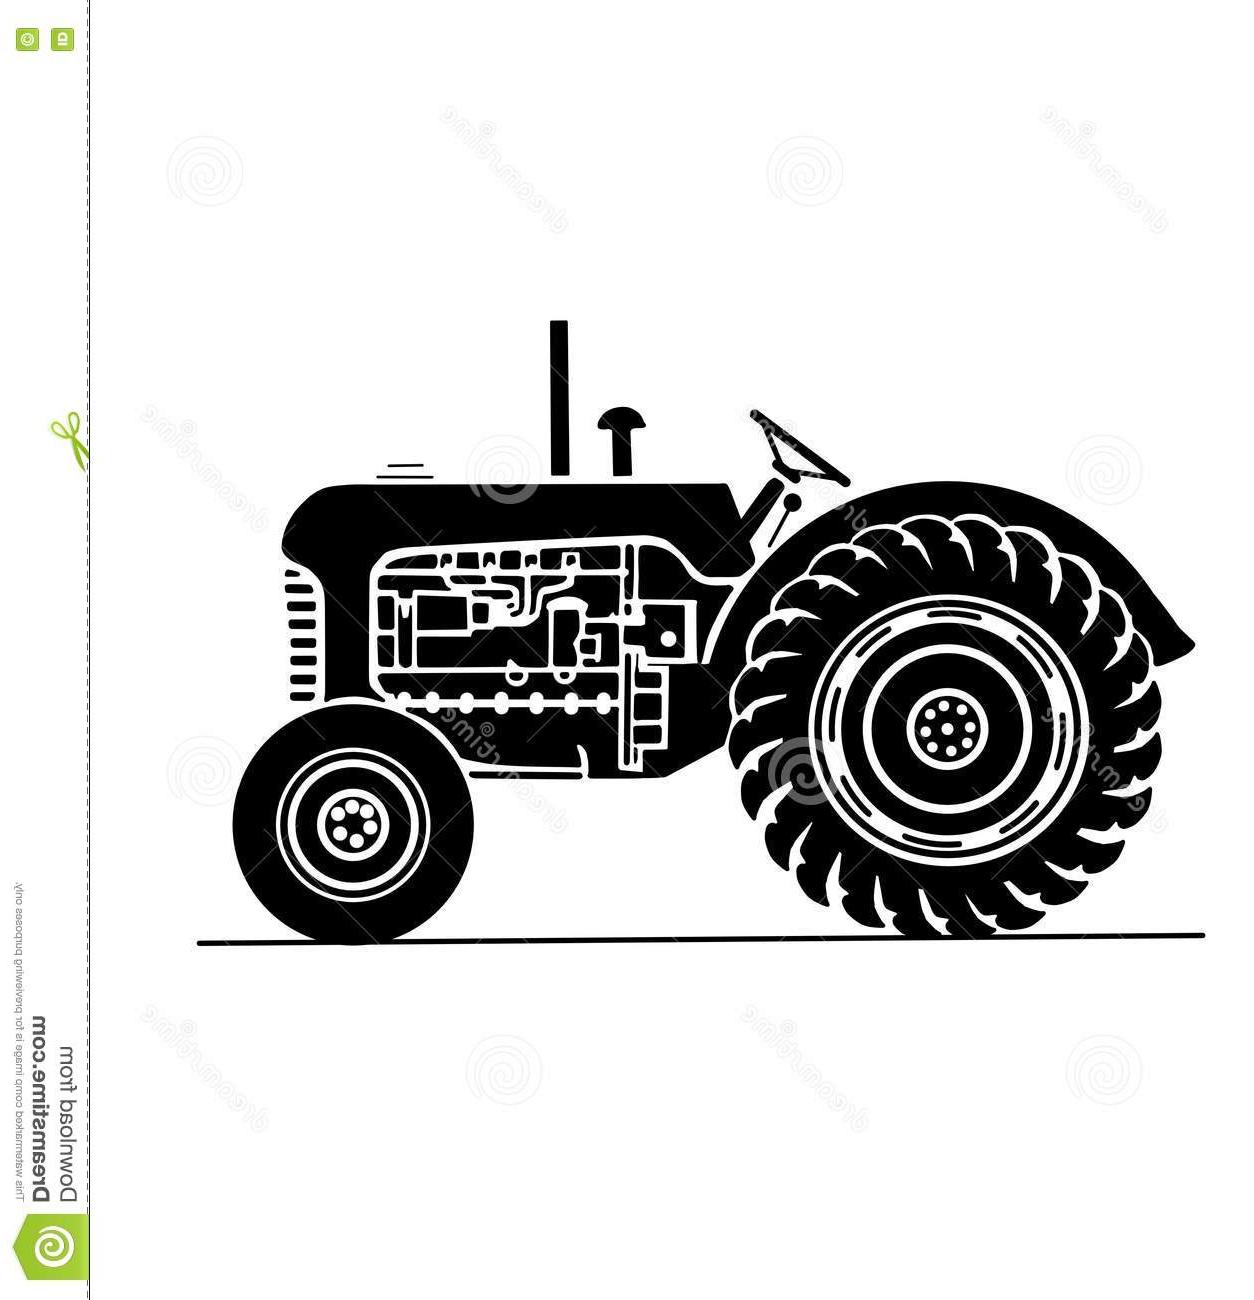 Farm tractor vector.